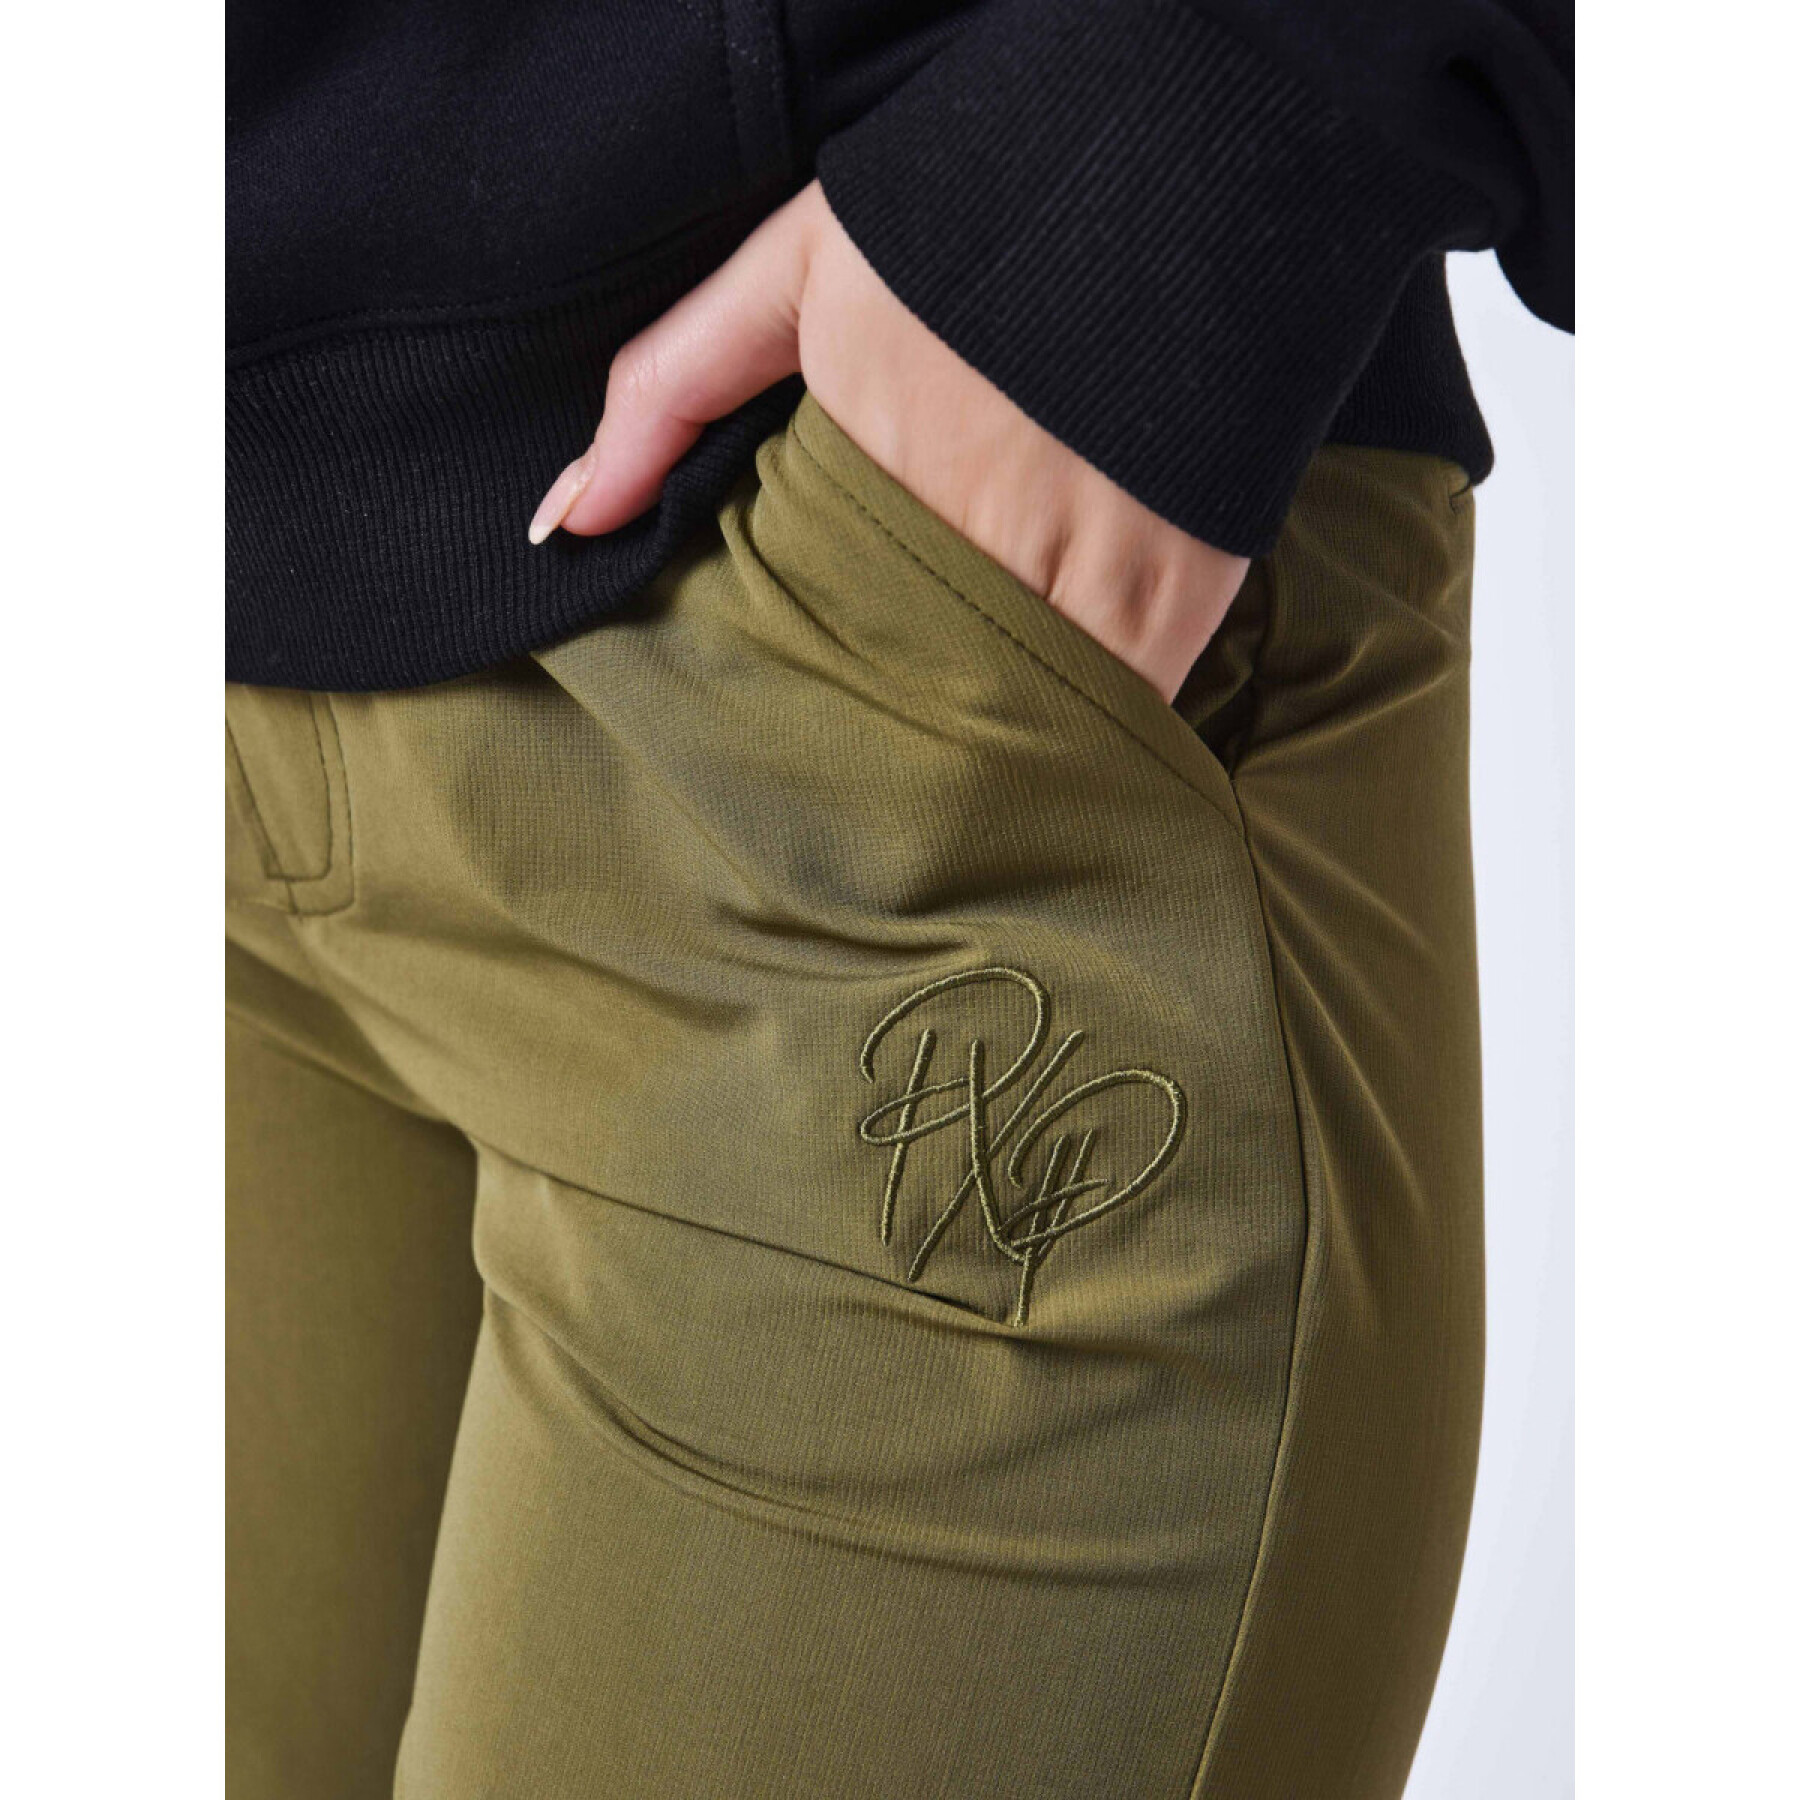 Women's straight cargo pants Project X Paris